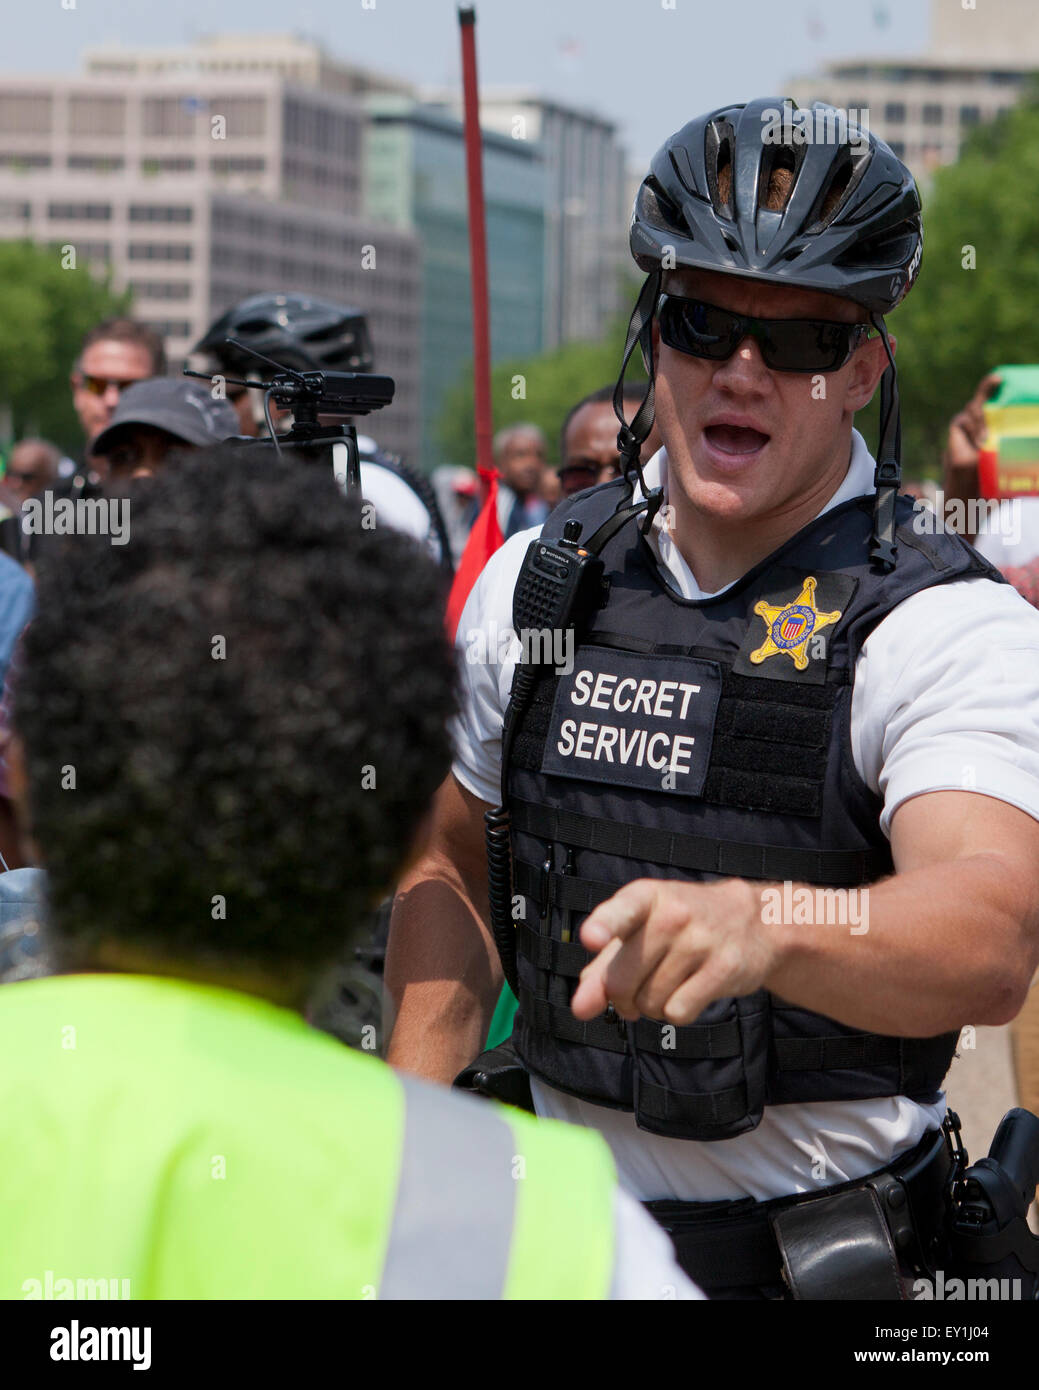 El Servicio Secreto de policía realizando el control de multitudes durante protesta - Washington, DC, EE.UU. Foto de stock